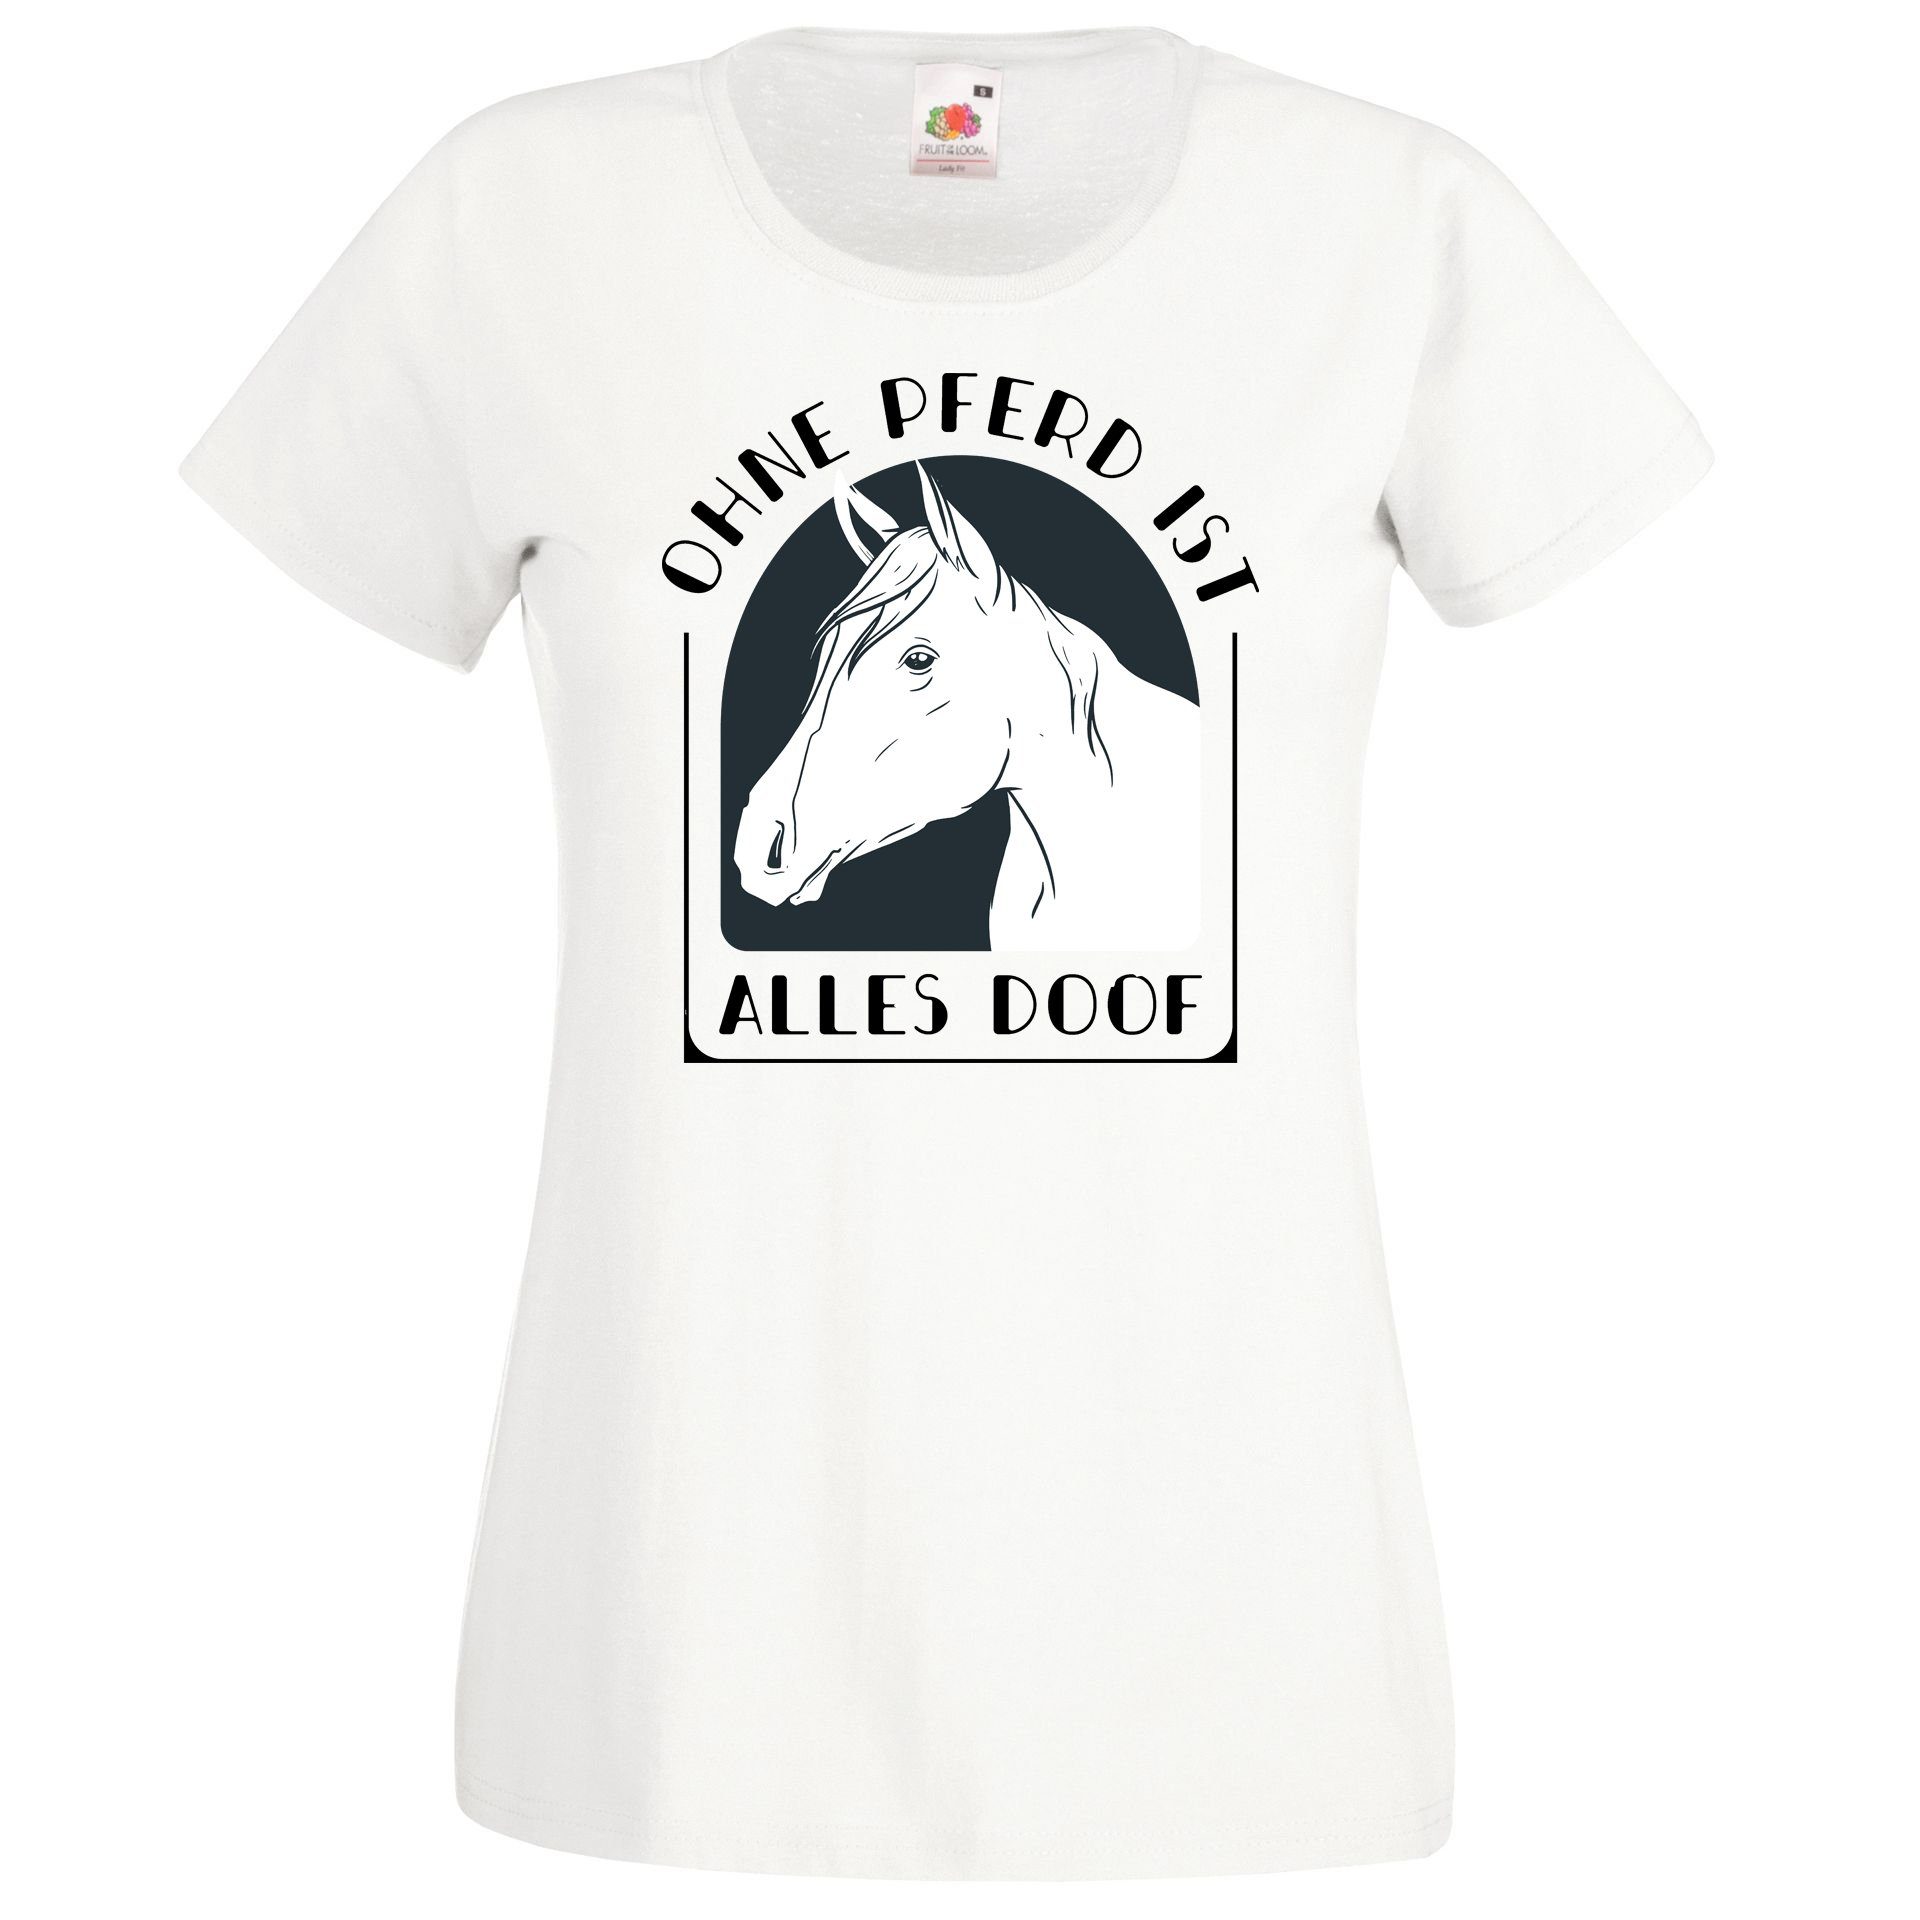 alles Damen Pferd Designz Doof Ohne Weiß Shirt T-Shirt Print Youth ist mit modischem